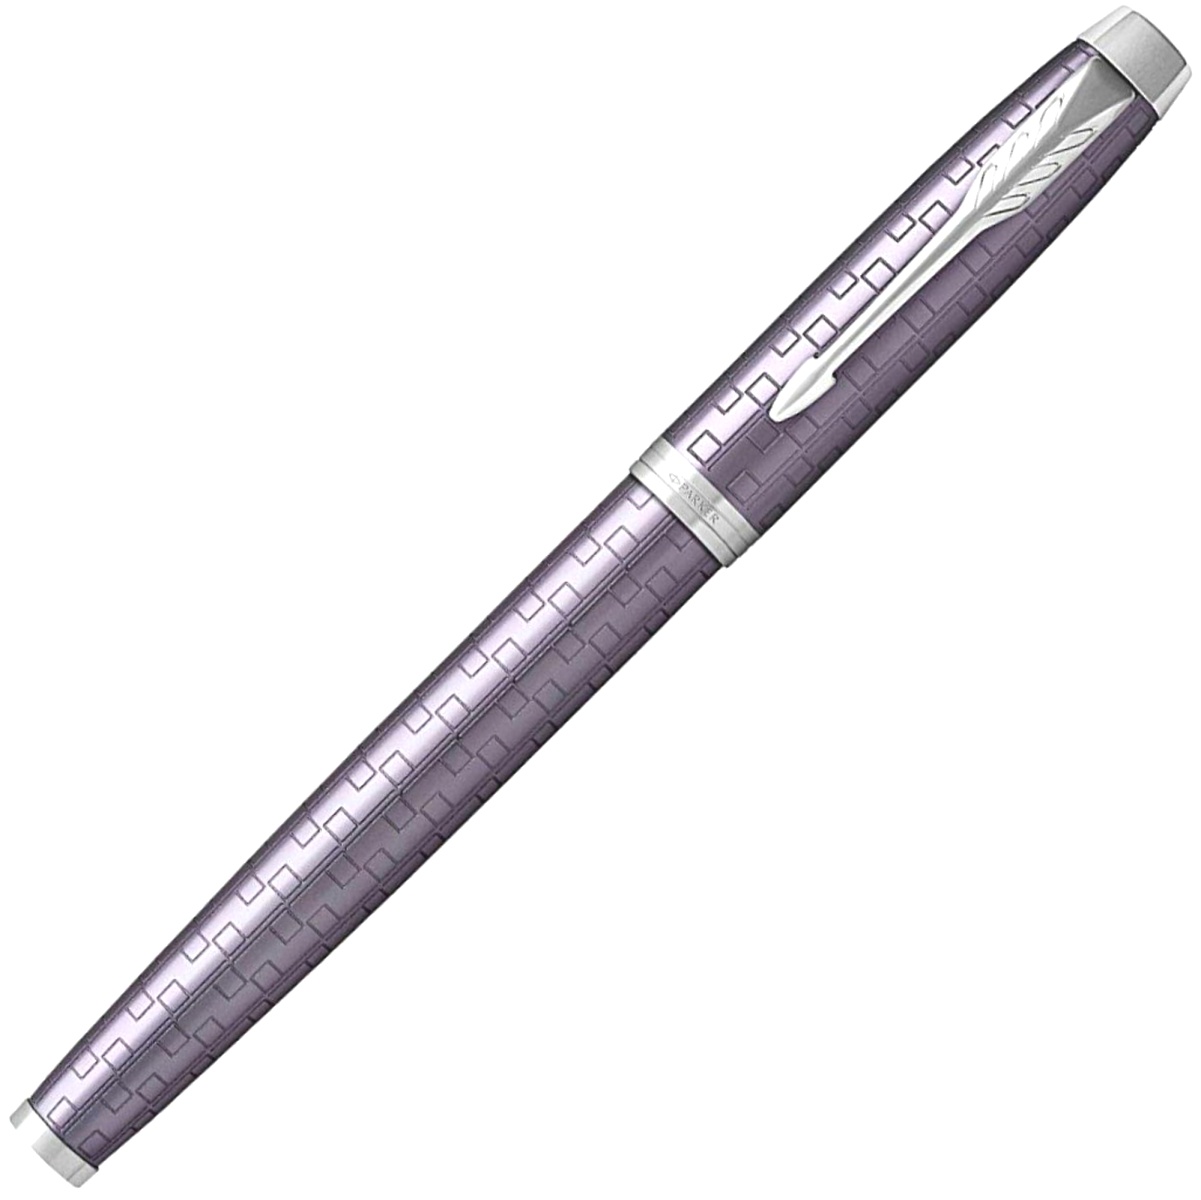  Перьевая ручка Parker IM Premium F324, Dark Violet CT (Перо F), фото 2